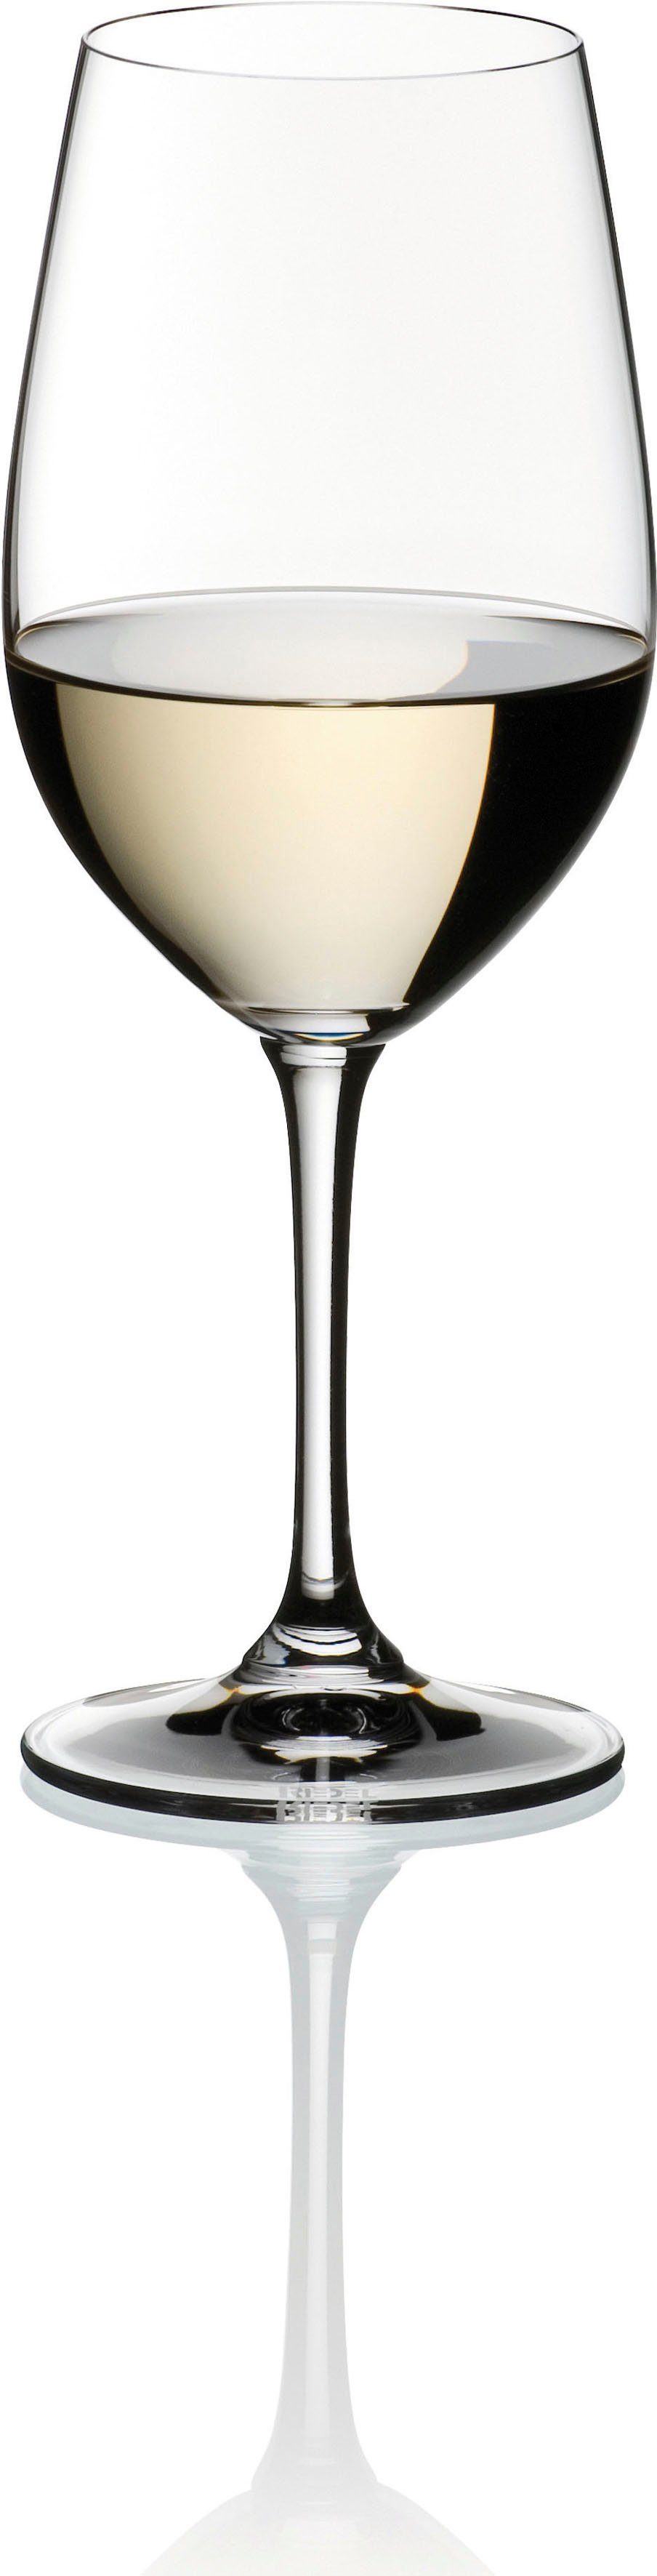 RIEDEL Glas Weißweinglas Vinum, Kristallglas, Made in Germany, 404 ml, 2-teilig